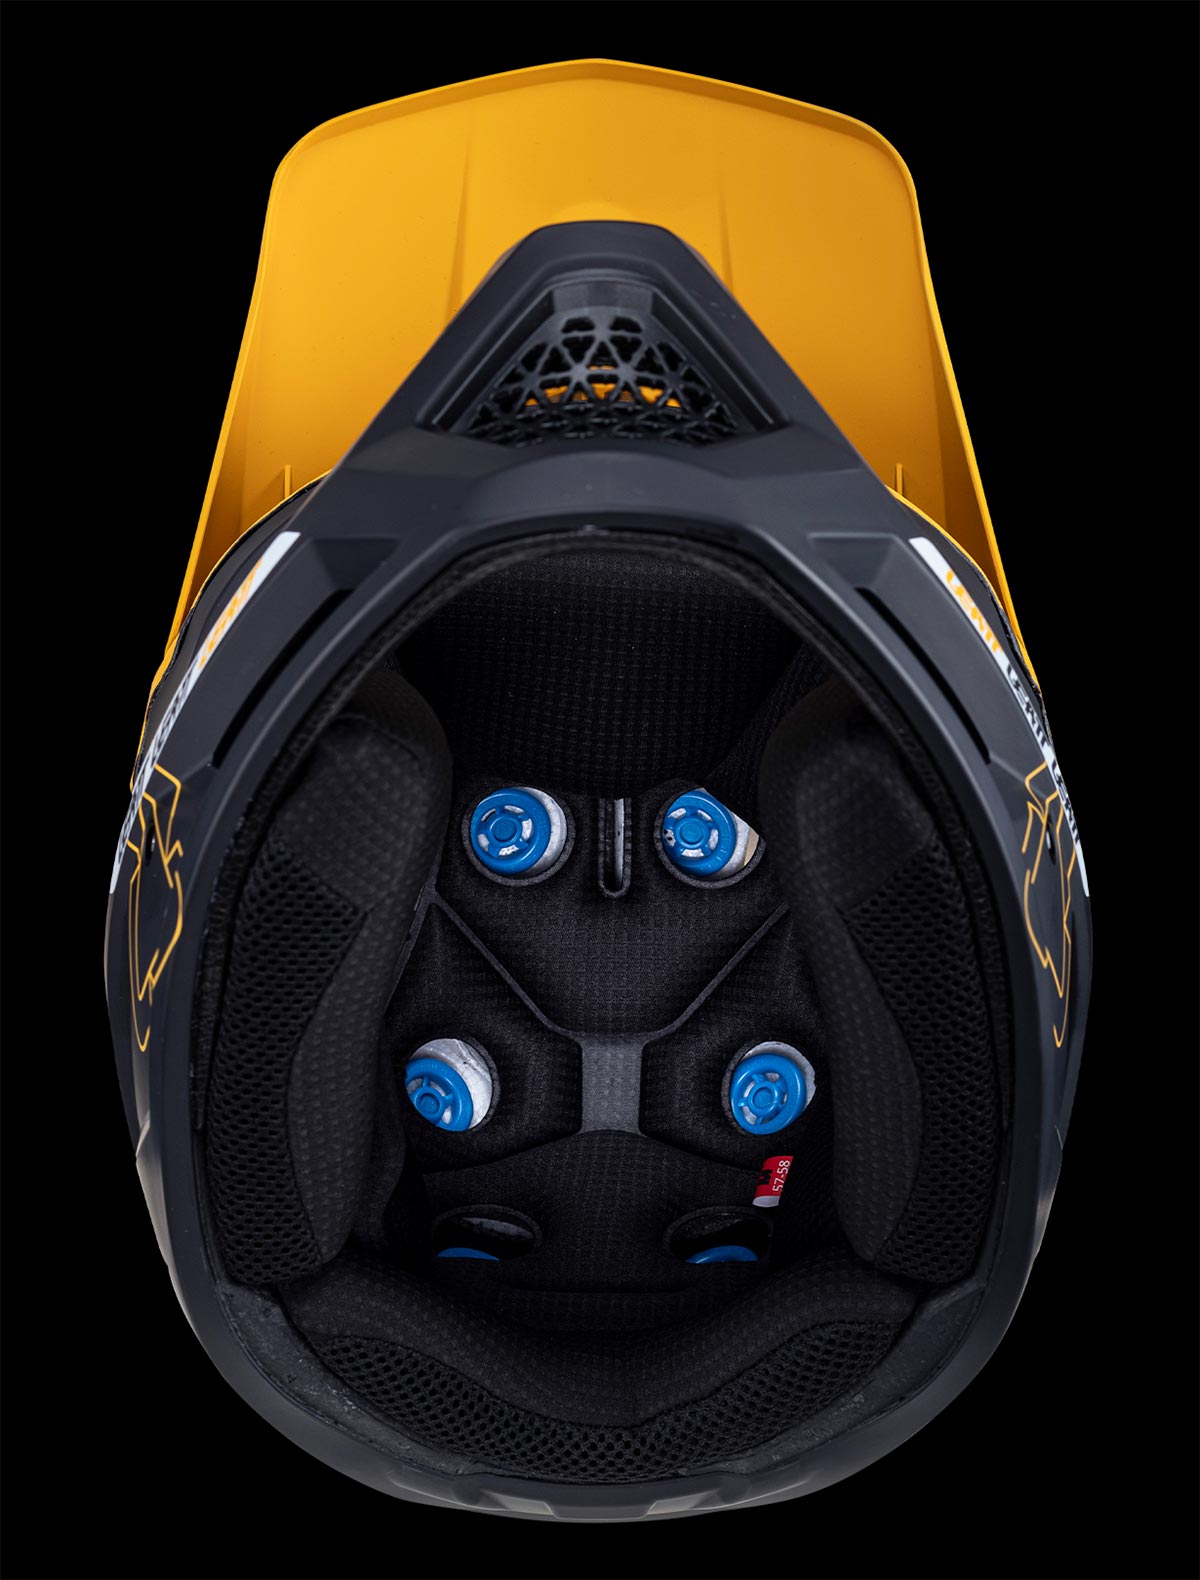 Leatt presenta el Gravity 6.0 Carbon, su mejor casco integral de descenso